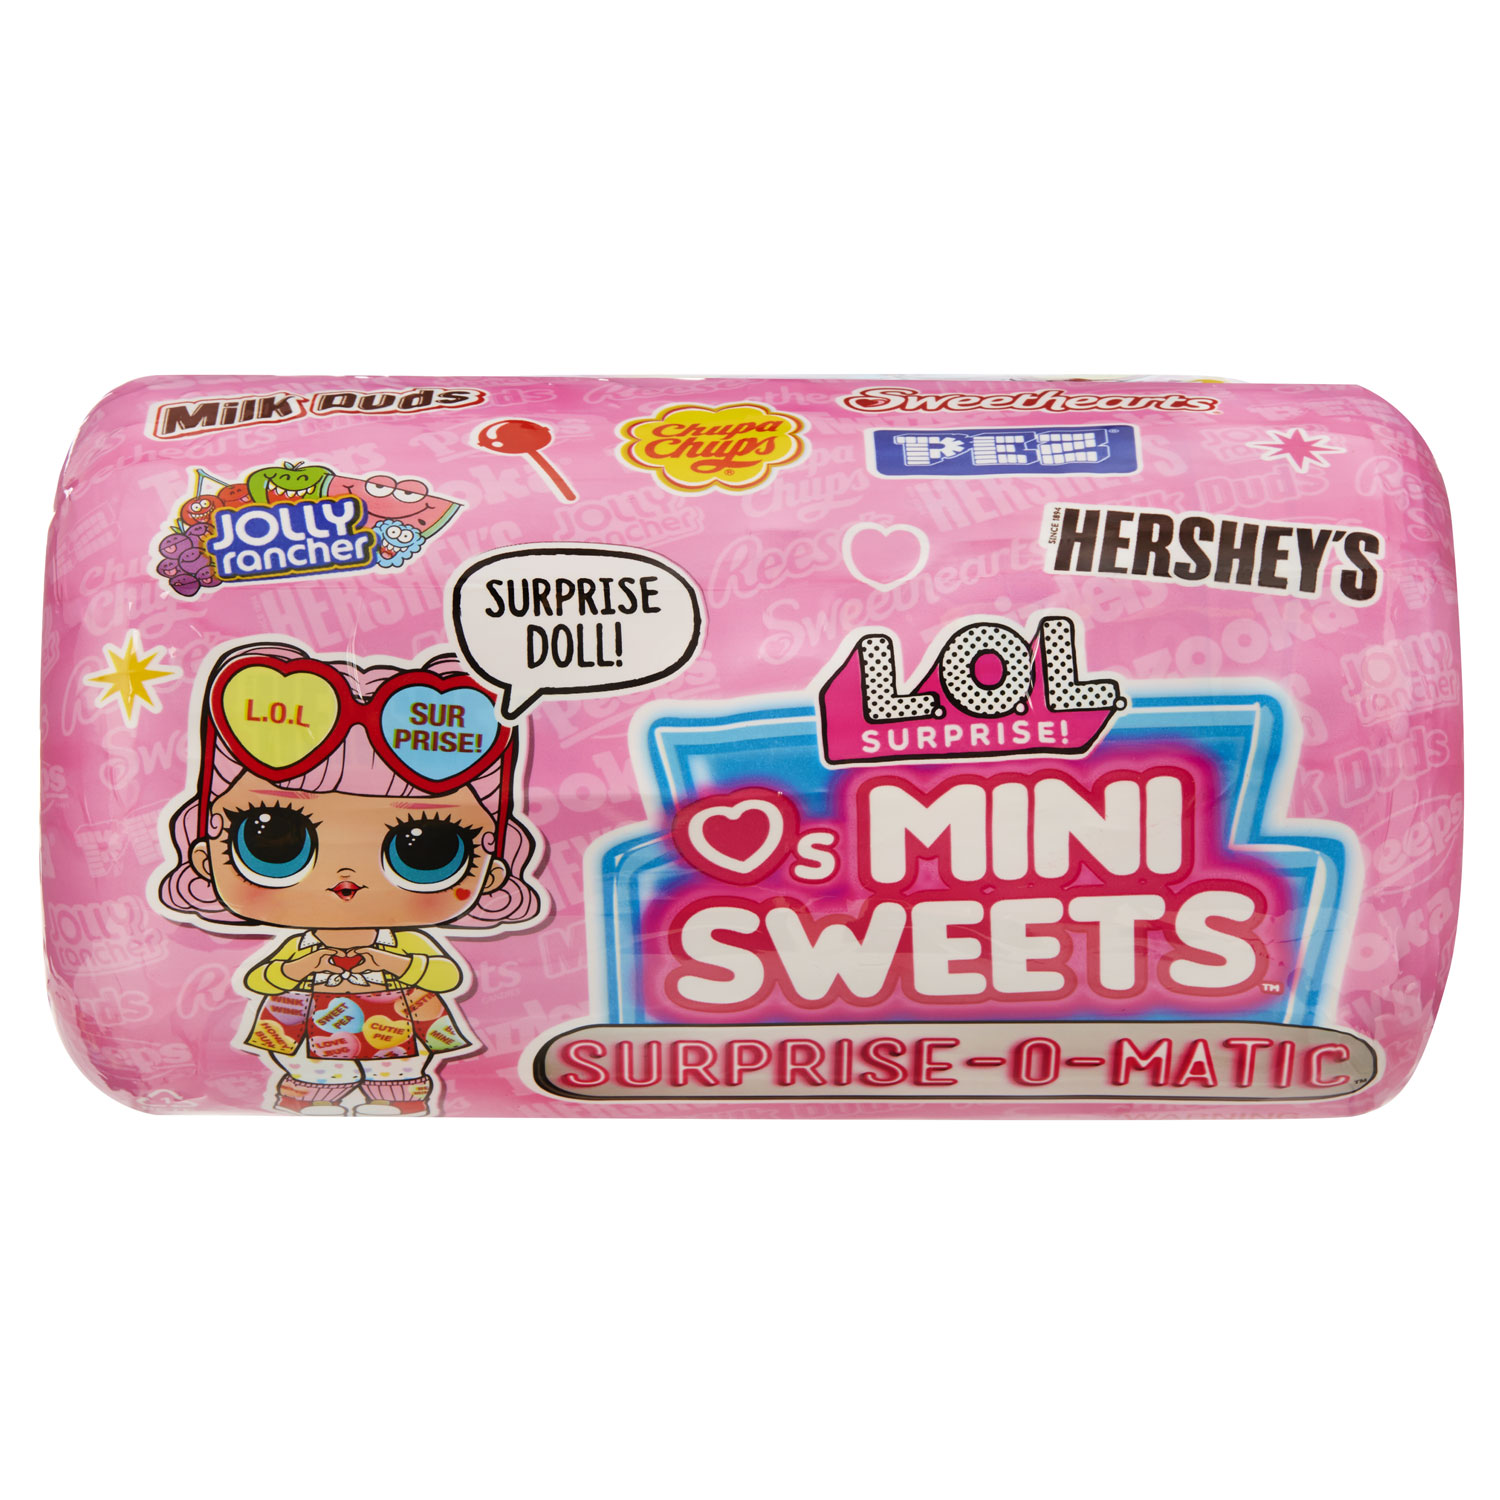 L.O.L. Surprise! Loves Mini Sweets X Haribo Vending Machine